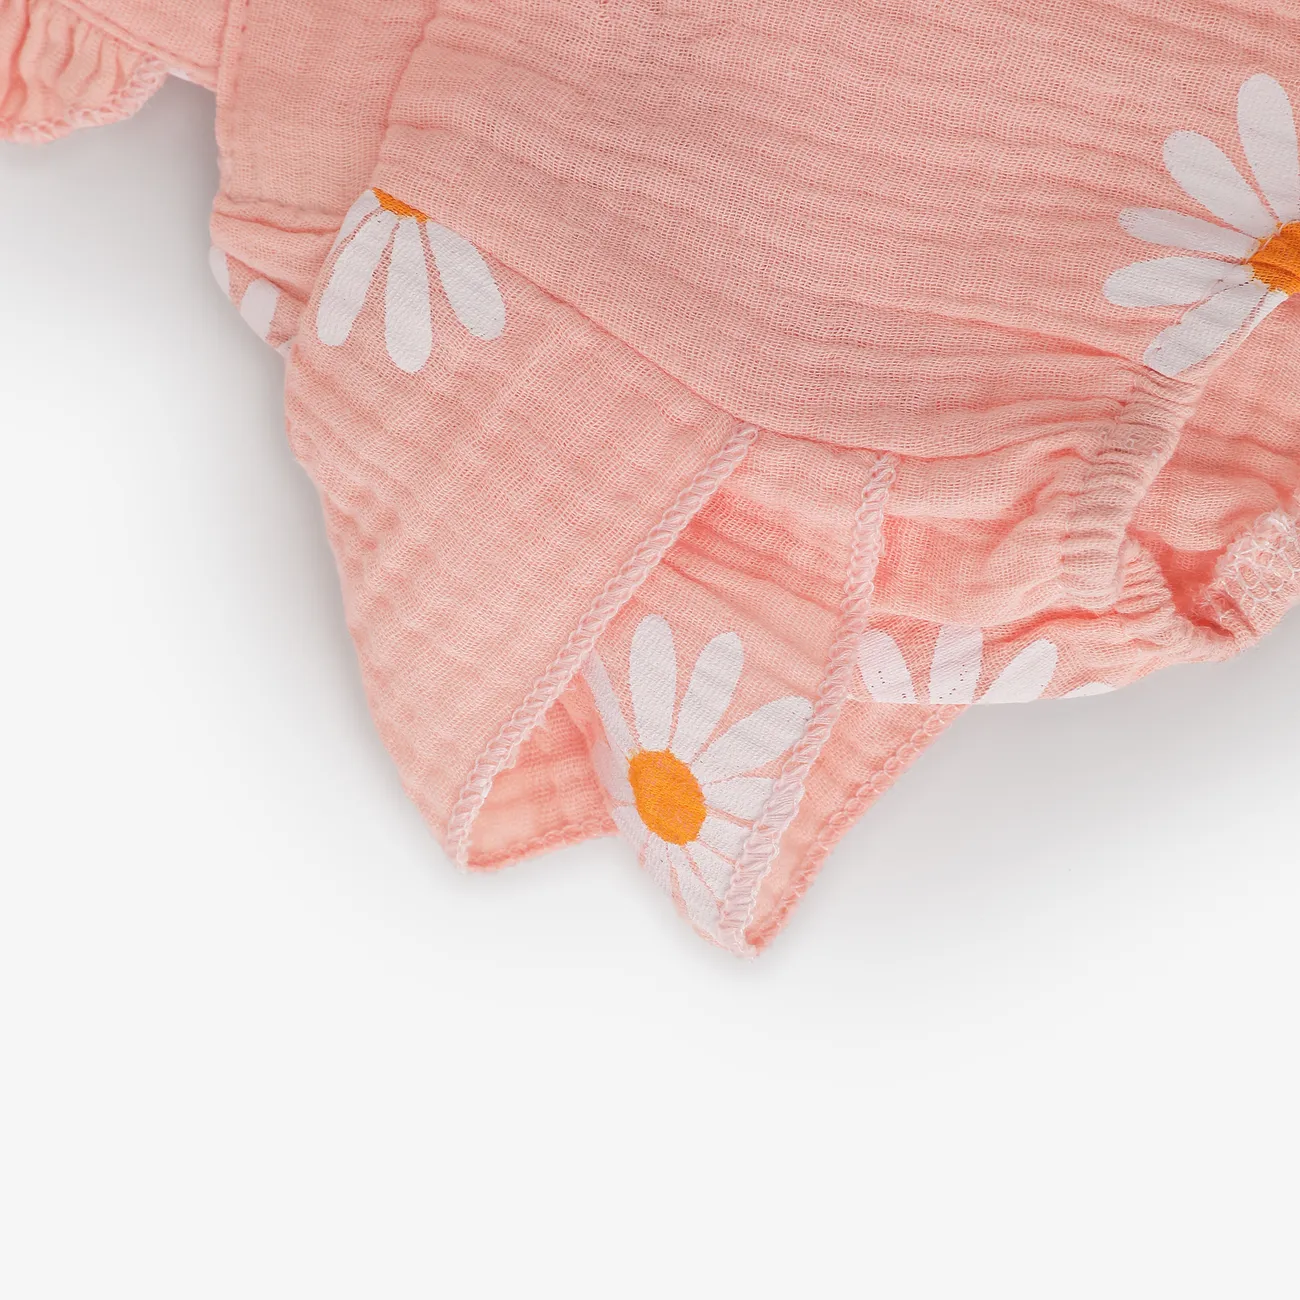 2件 嬰兒 女 荷葉邊 小雛菊 休閒 無袖 連身衣 粉色 big image 1